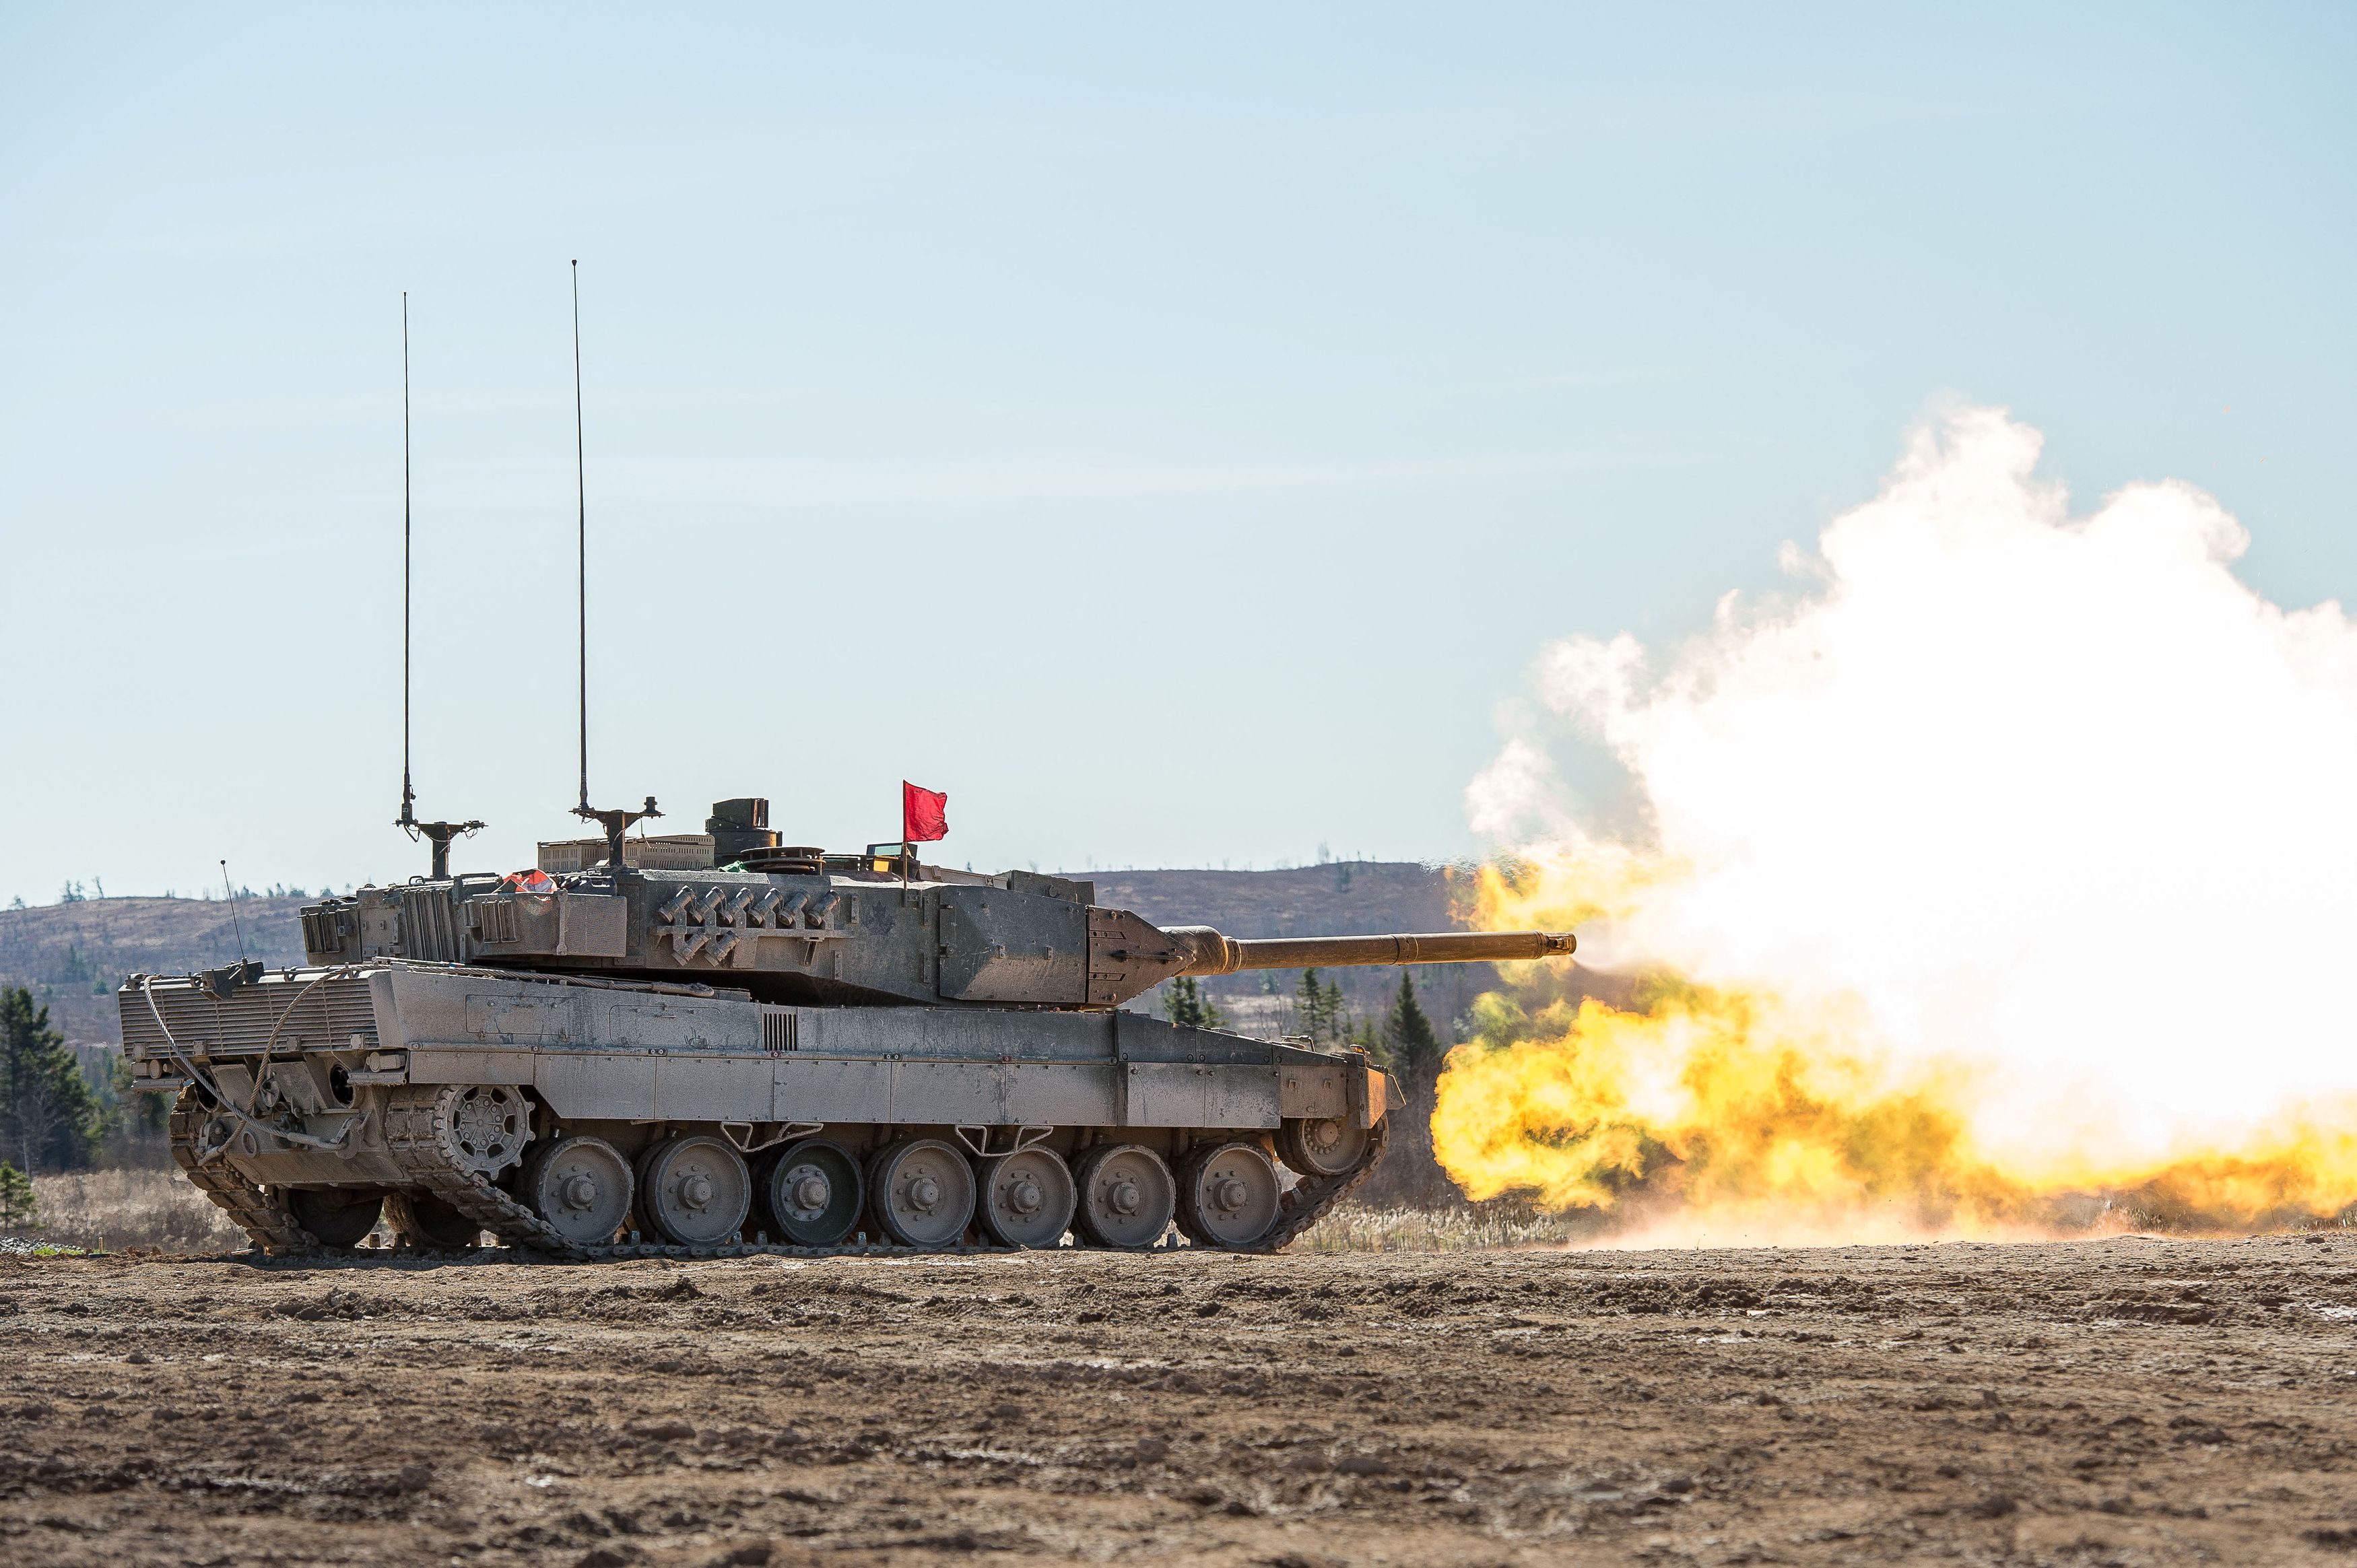 Ουκρανία: Θα είναι «game changer» του πολέμου τα άρματα μάχης; - Ποιες είναι οι προϋποθέσεις